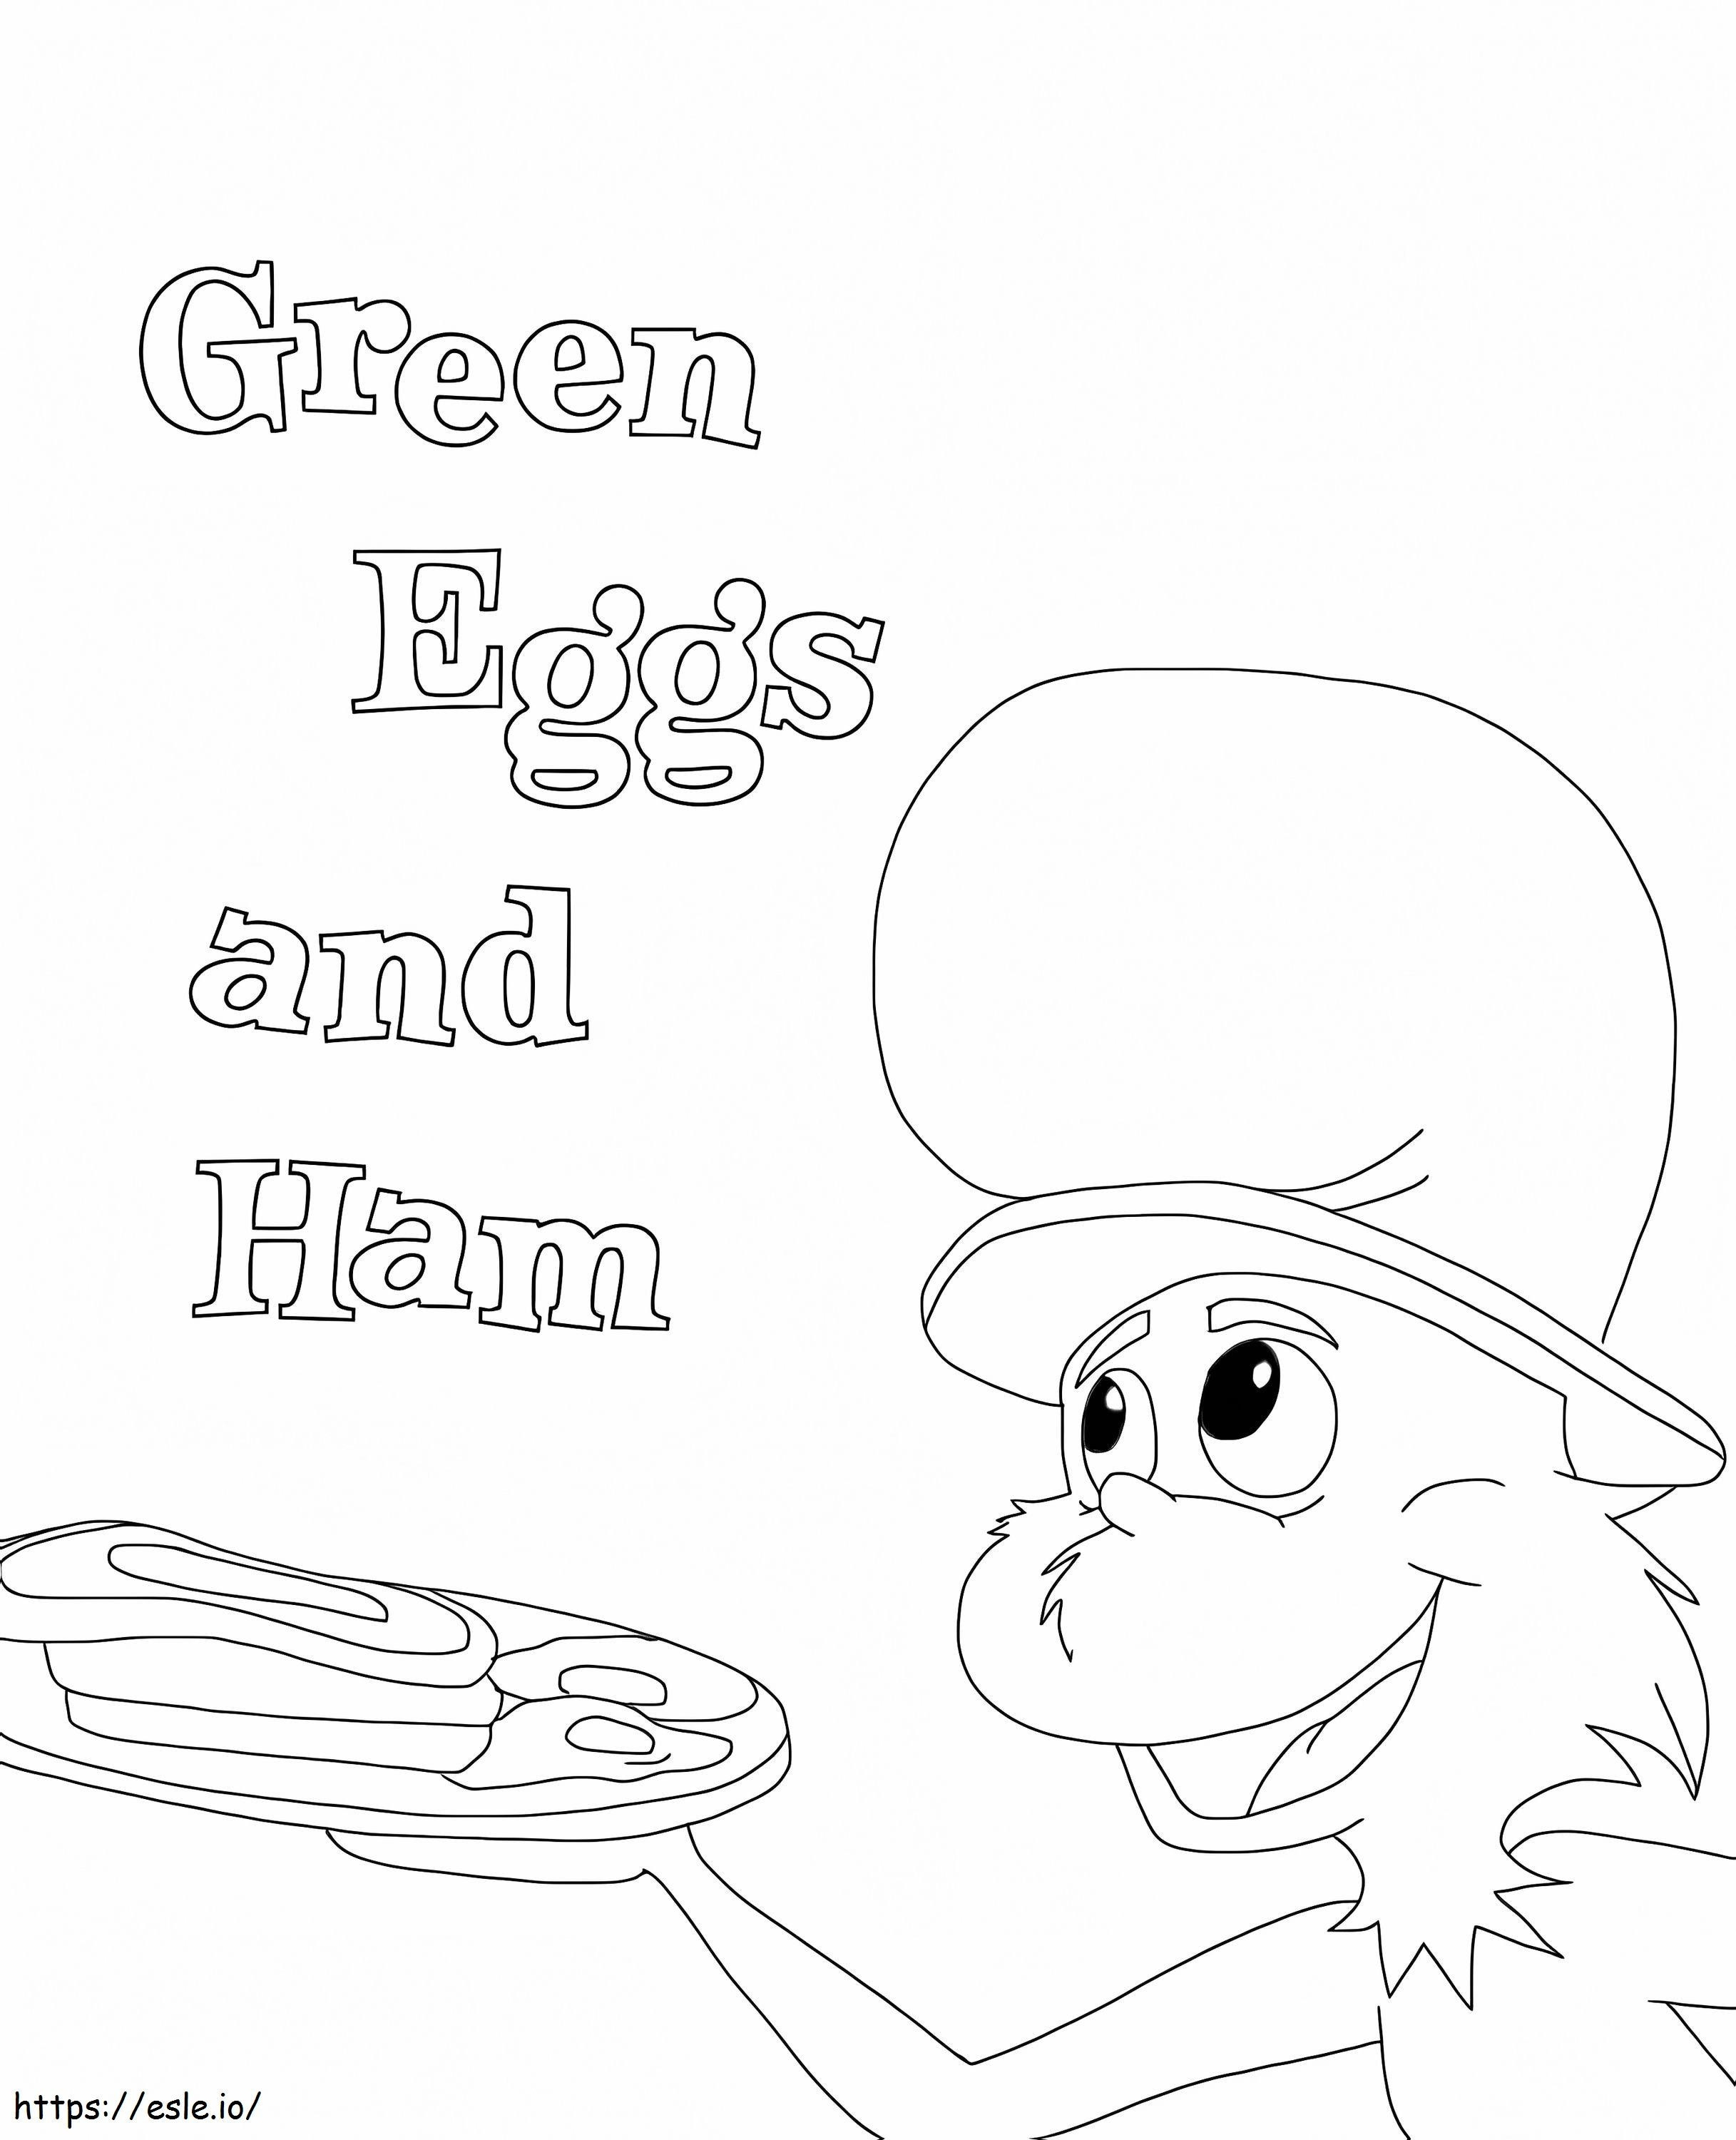 Ovos Verdes E Presunto 1 para colorir